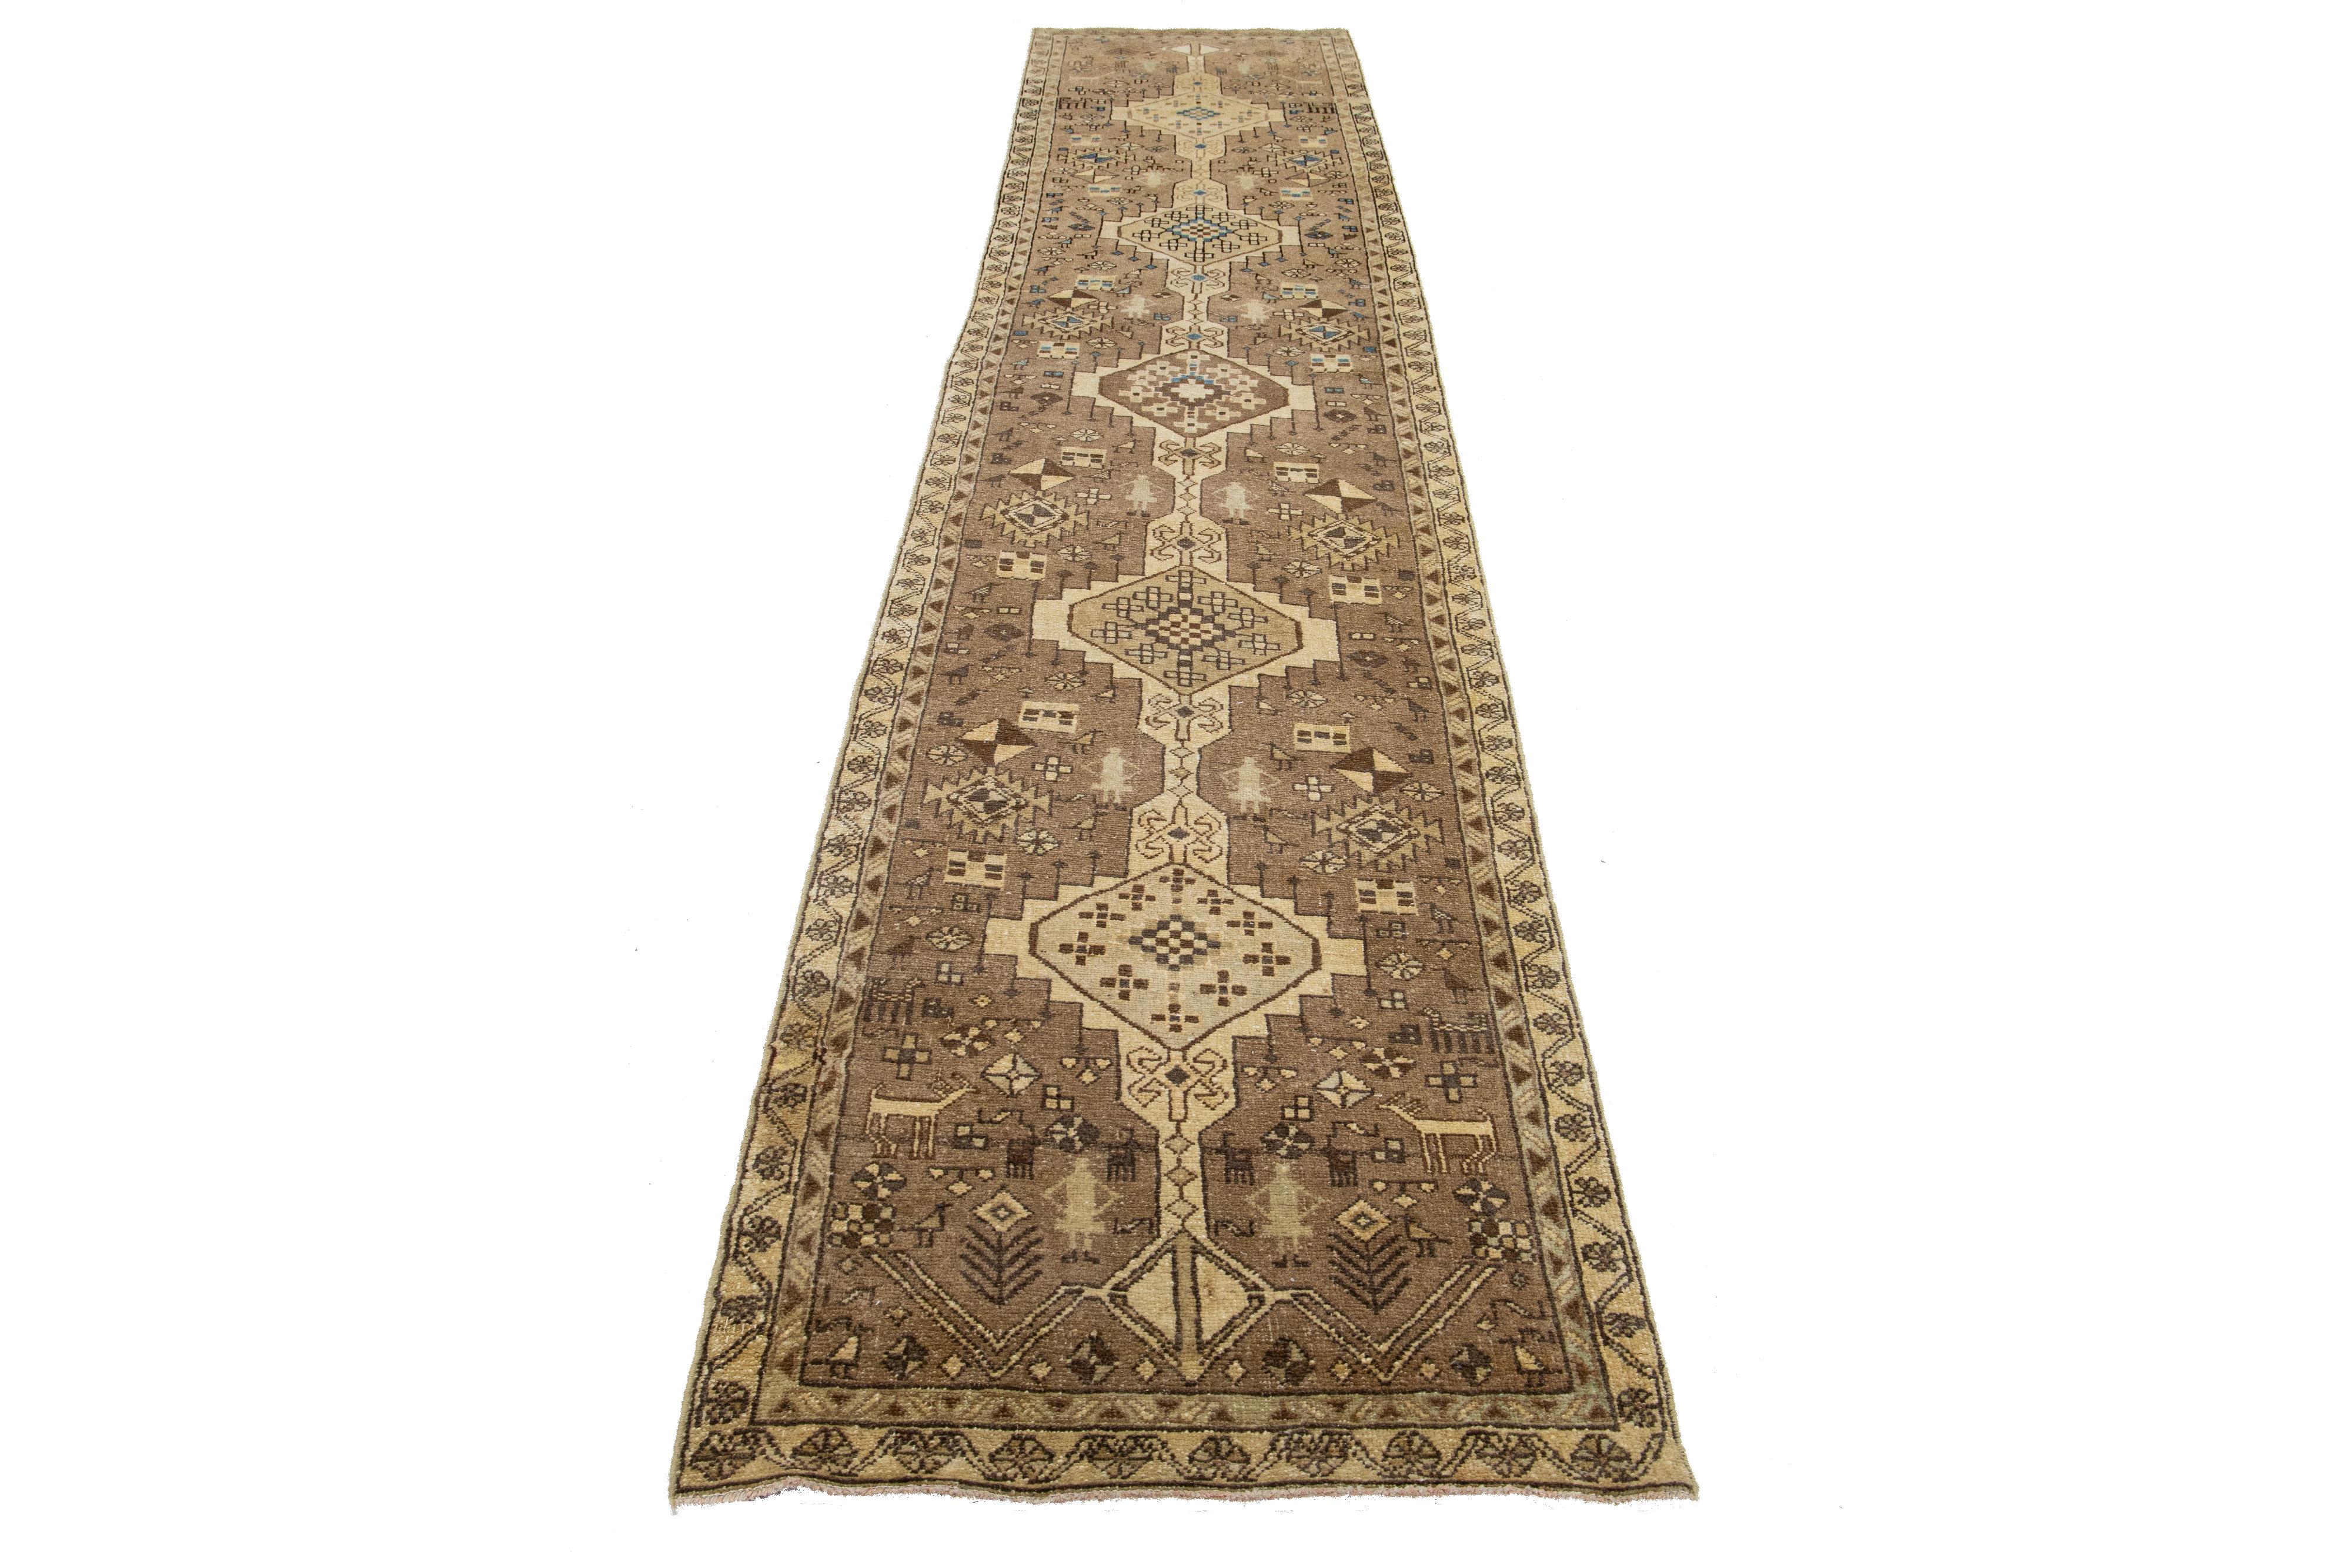 Ce chemin de table en laine vintage présente un champ marron avec des accents tribaux beiges et bleus d'origine persane.

Ce tapis mesure 2'11